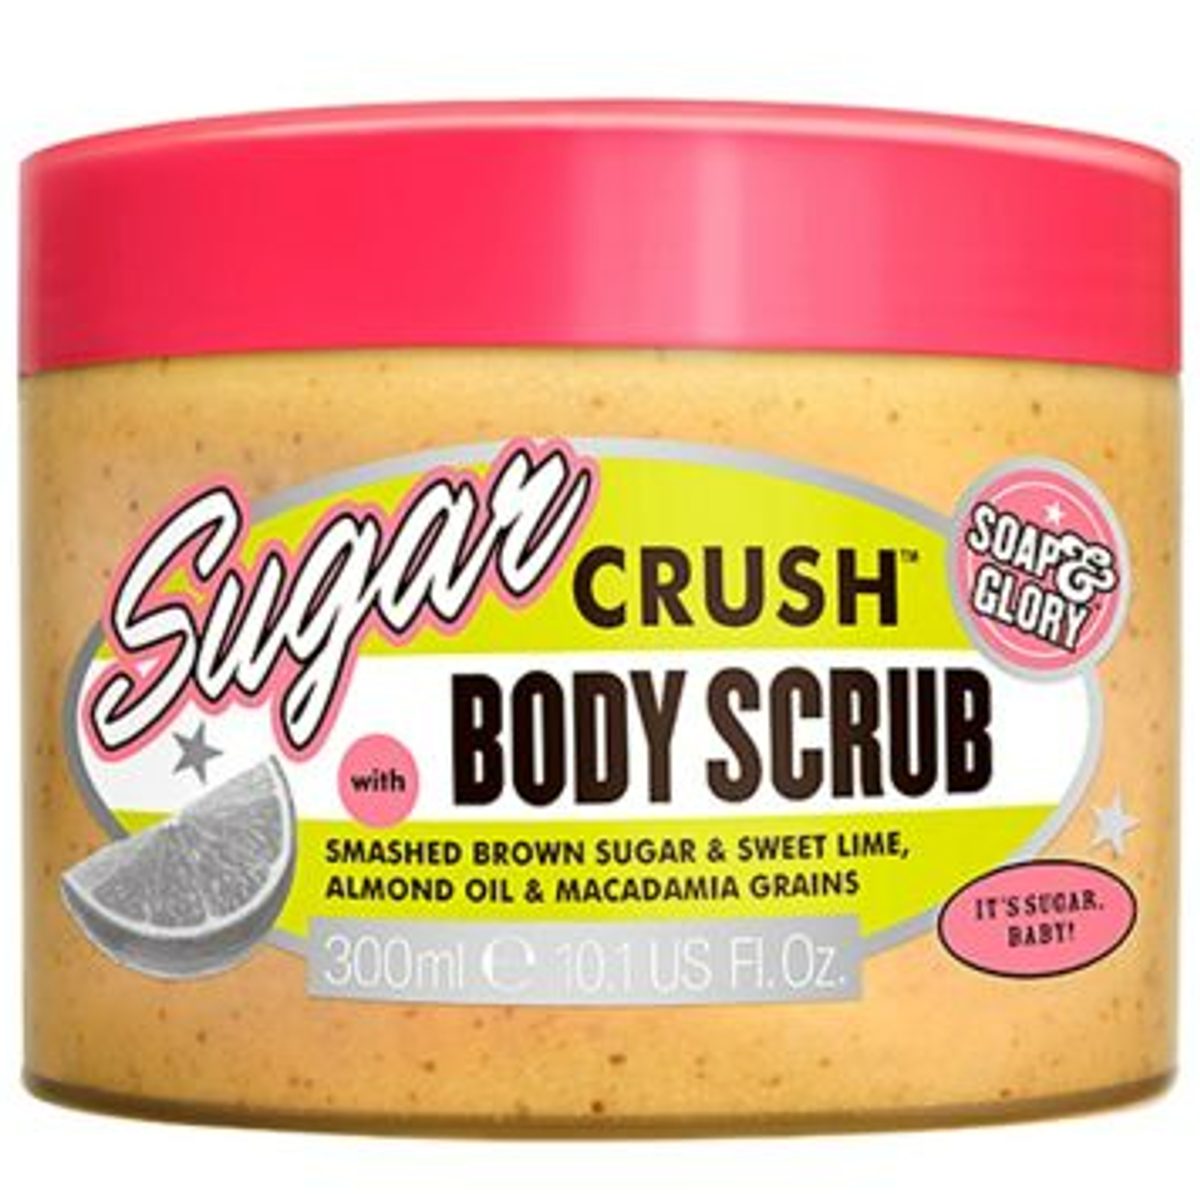 Sugar Crush Exfoliating Body Scrub